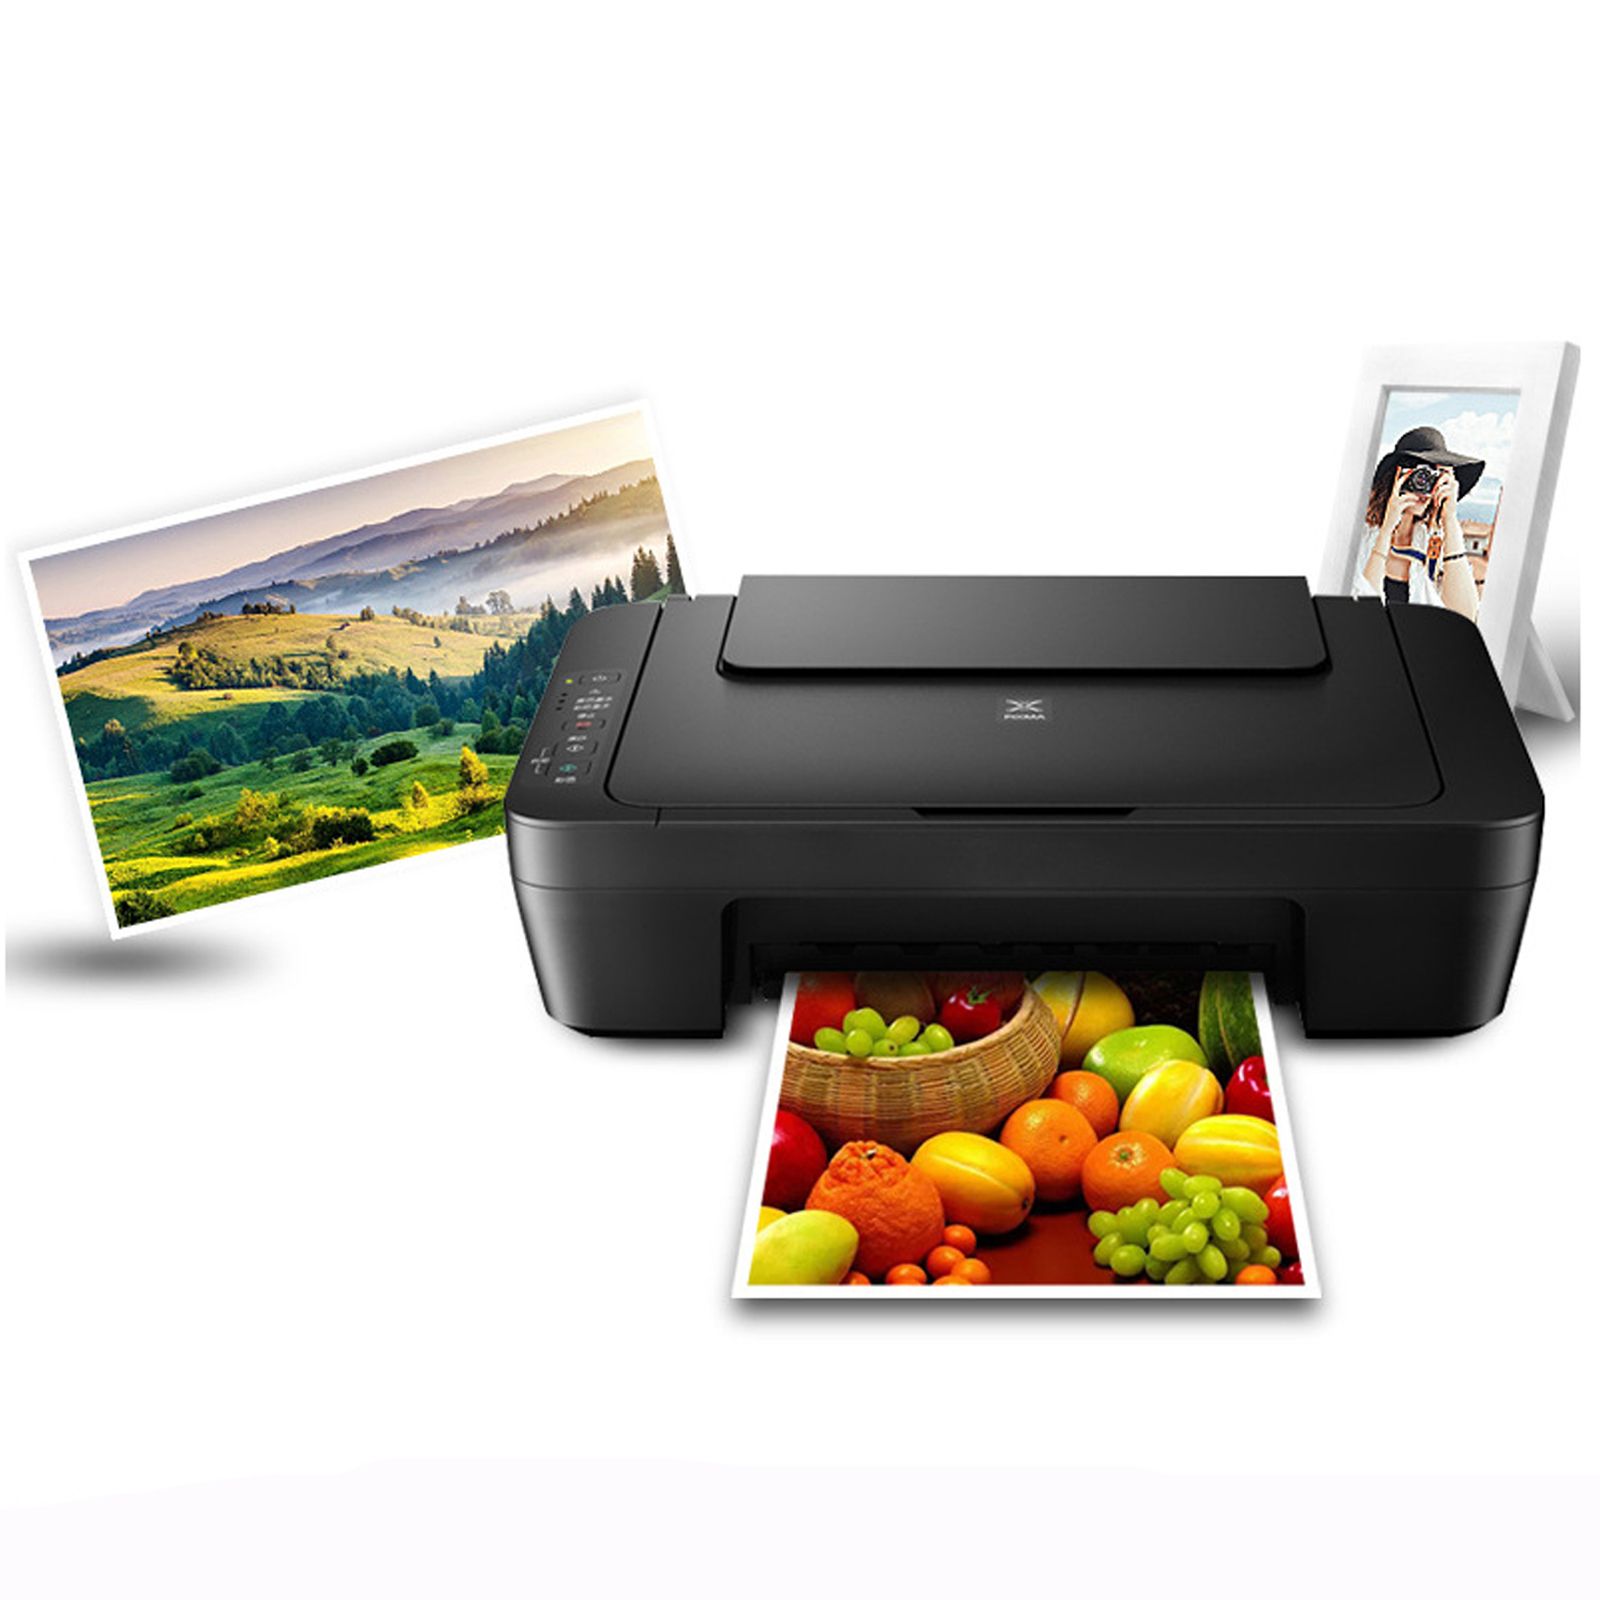 MG2580S imprimante à jet d'encre couleur copieur tout-en-un ordinateur domestique numérisation de photos petit format A4